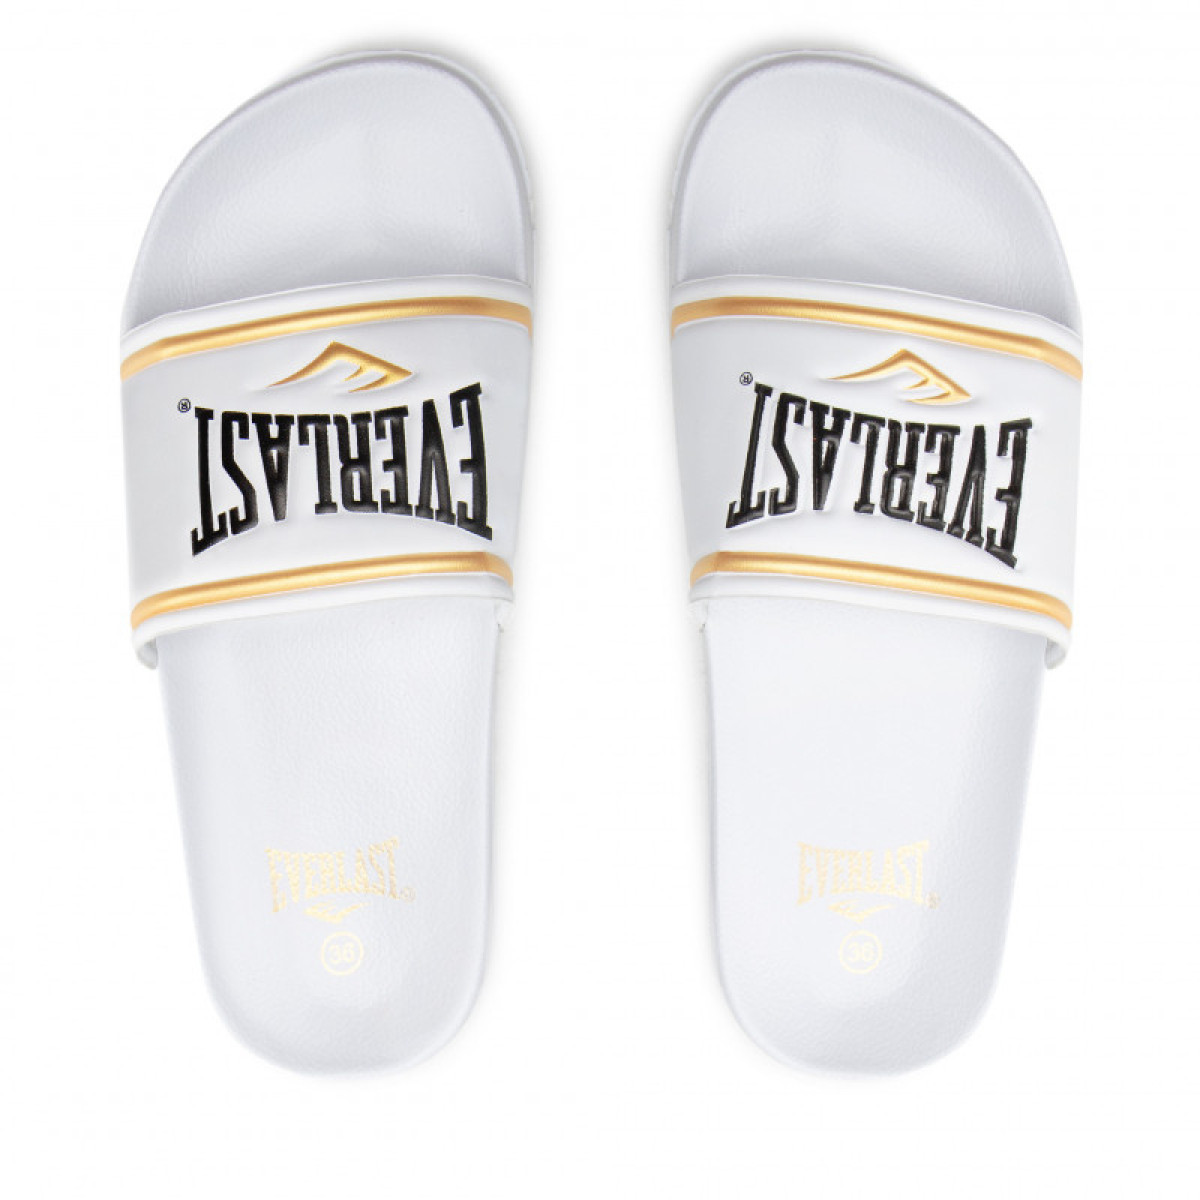 Everlast Side Slippers - White/Gold